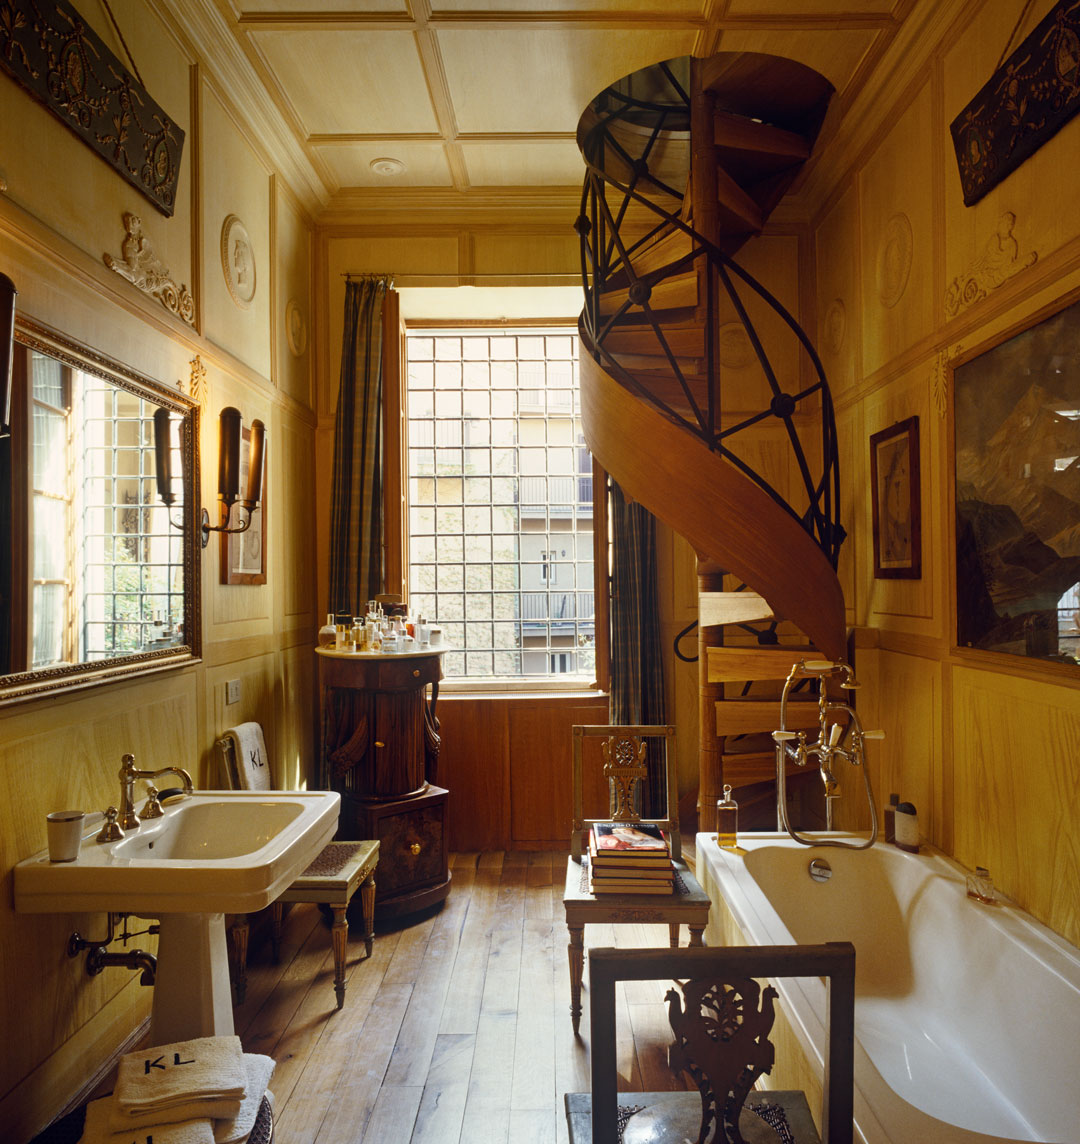 Karl Lagerfeld's bathroom photo by Fritz von der Schulenburg courtesy Interior Archive. As featured in Interiors